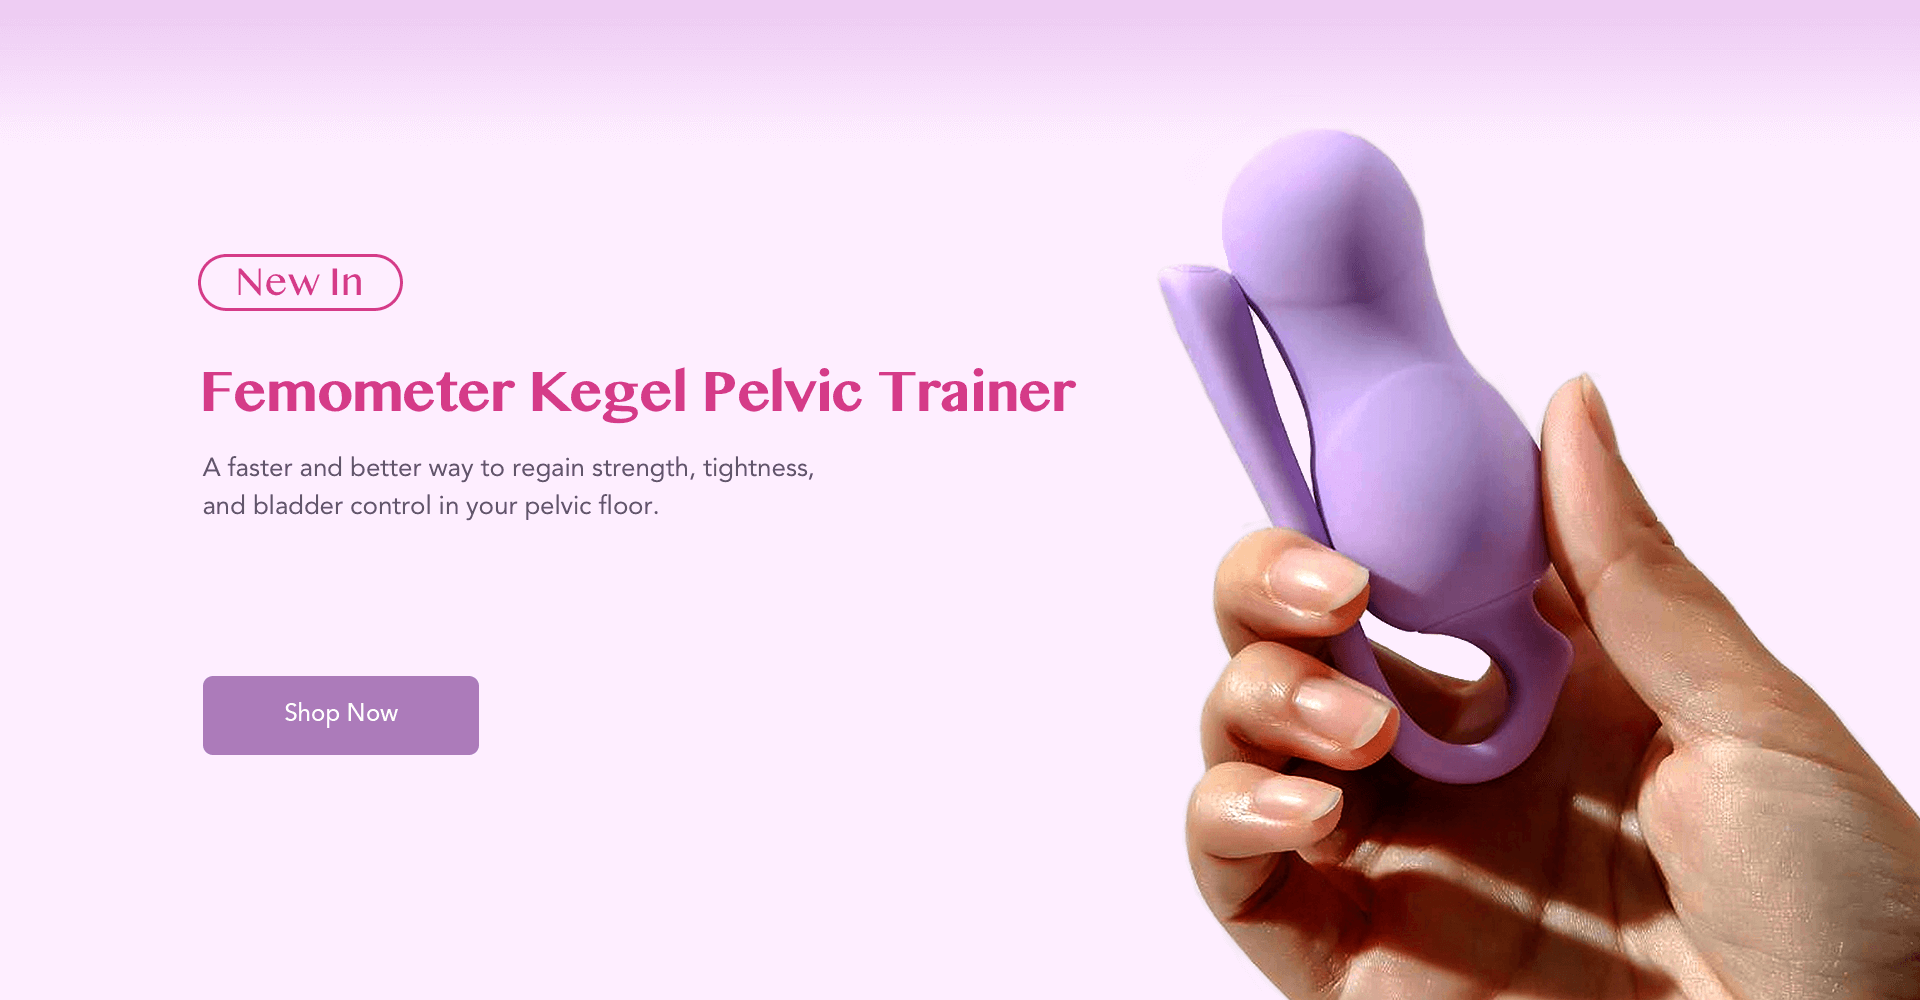 Femometer kegel smart trainer new in pc1